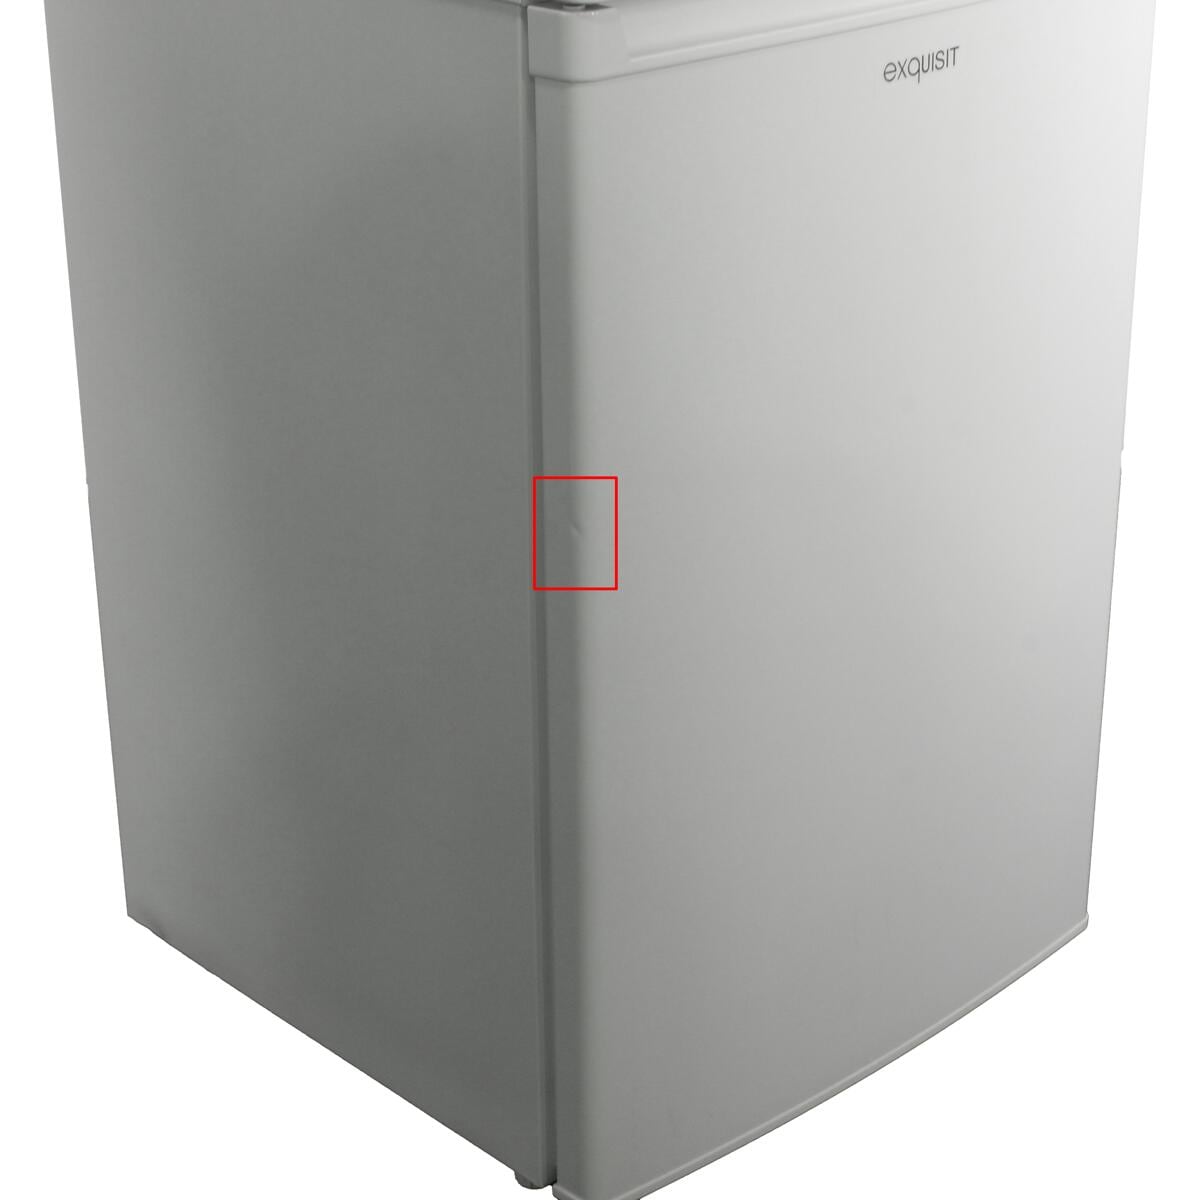 Exquisit KS16-4-E-040E Stand-Kühlschrank 55cm breit 109 Liter mit  Gefrierfach LED-Beleuchtung weiß